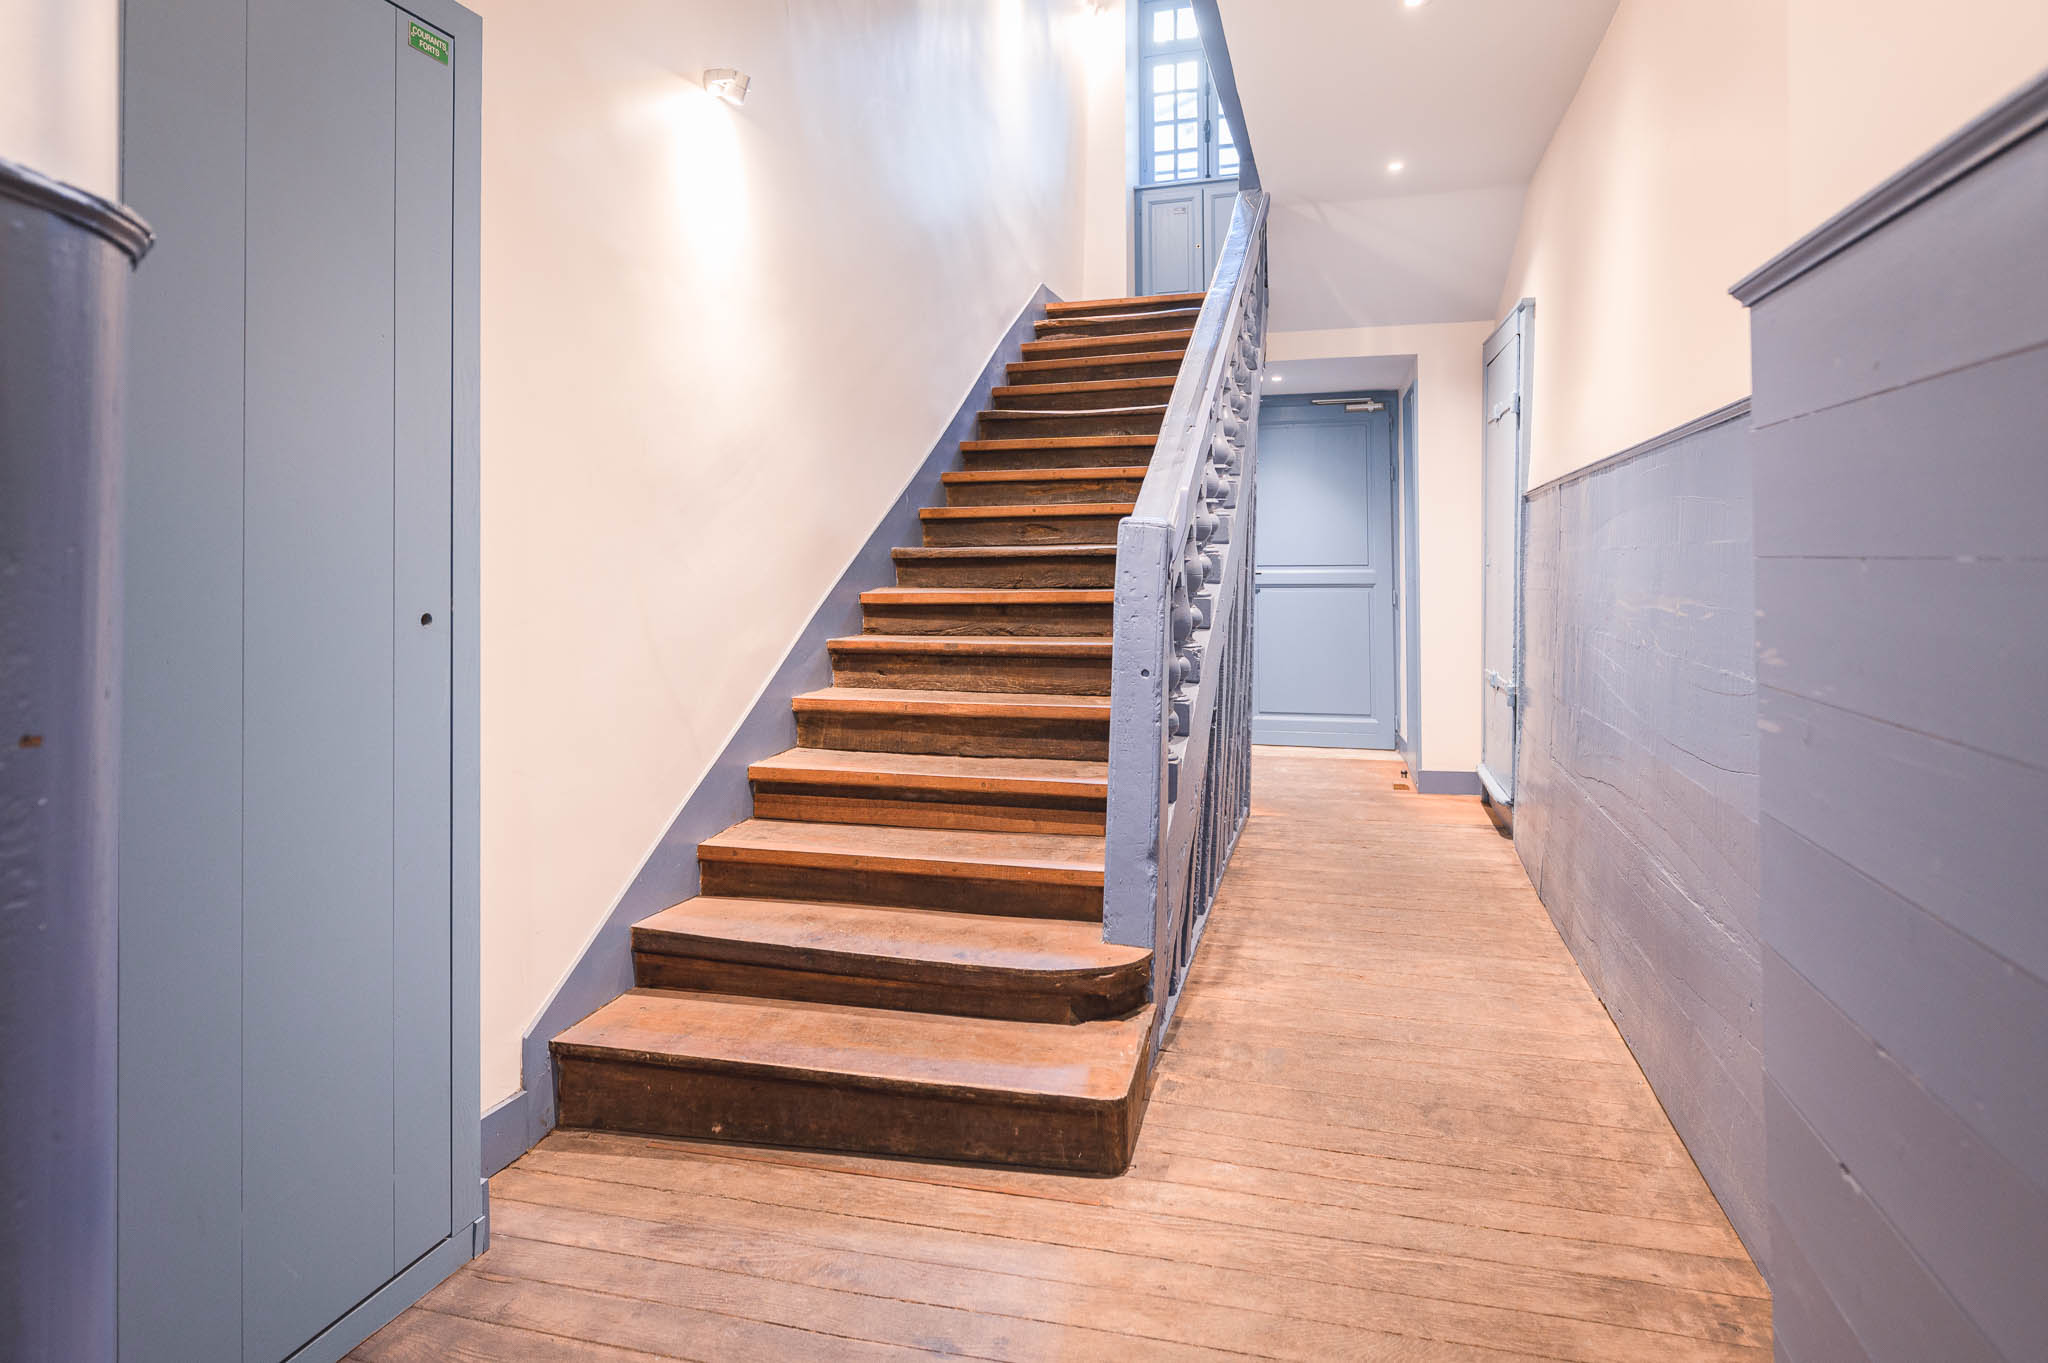 restauration-marche-escalier-immeuble-syndic-a-rennes-atelier-drouin-gandon